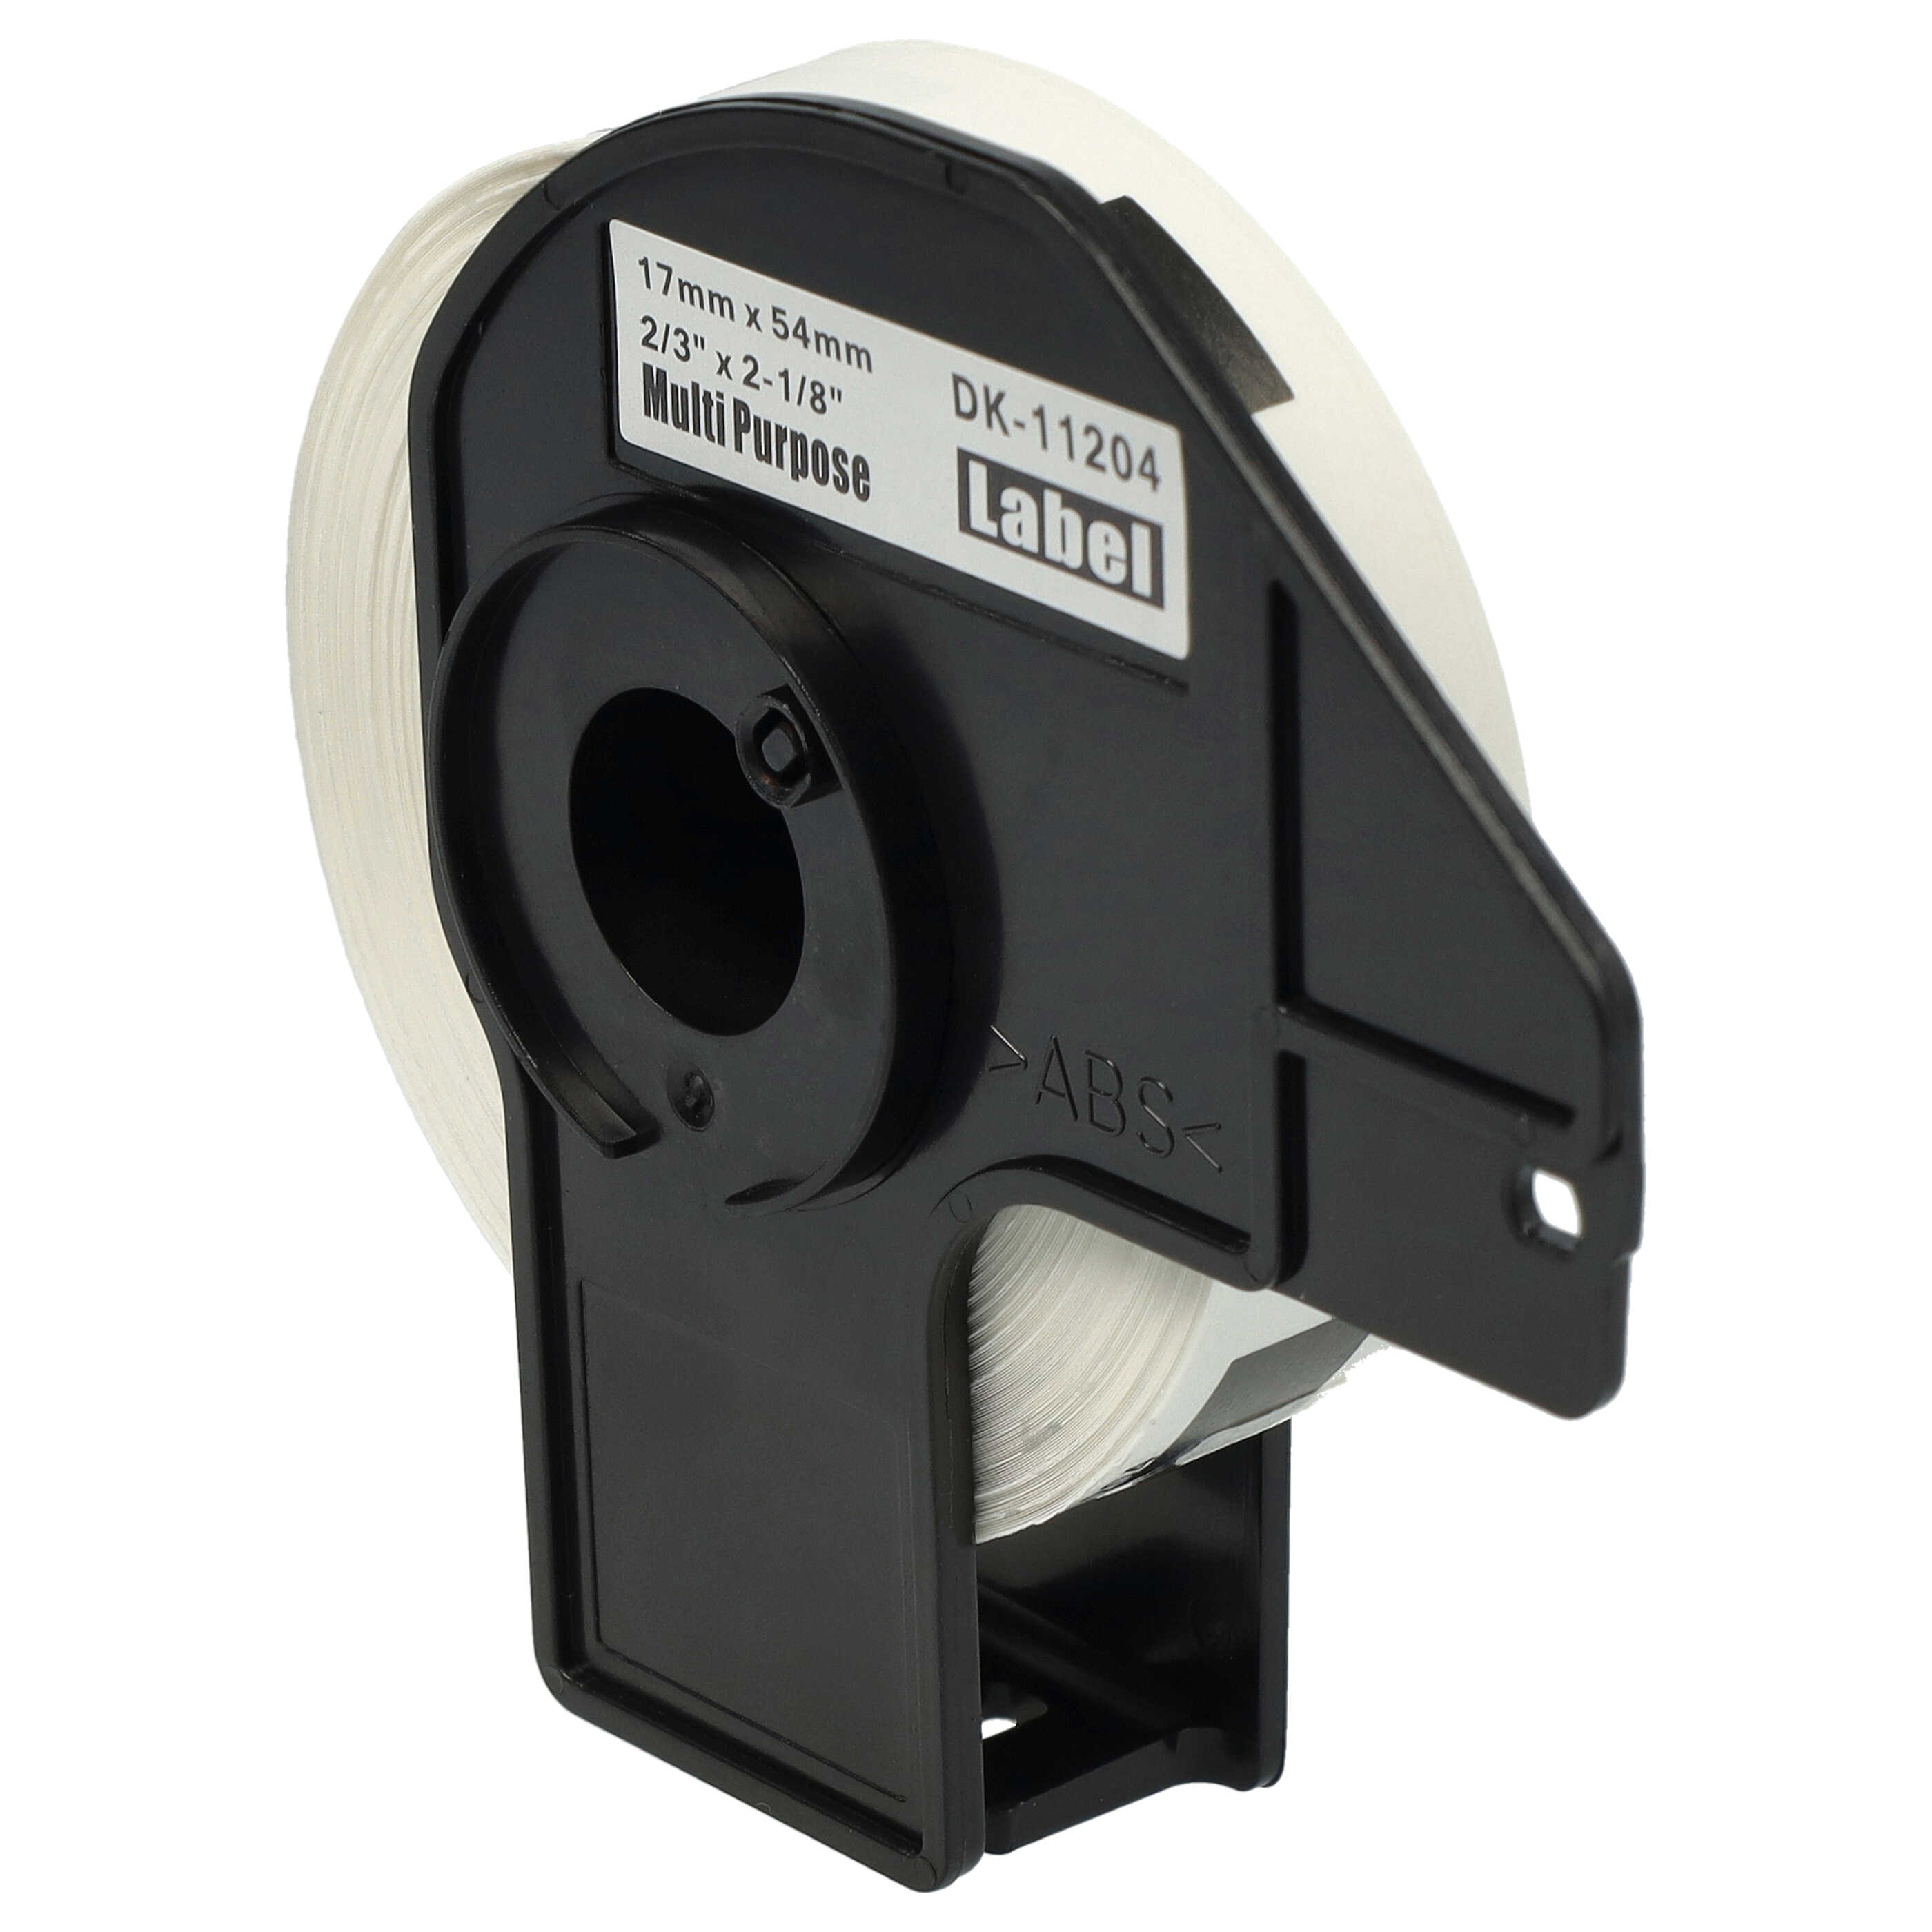 Rotolo etichette sostituisce Brother DK-11204 per etichettatrice - 17mm x 54mm + supporto